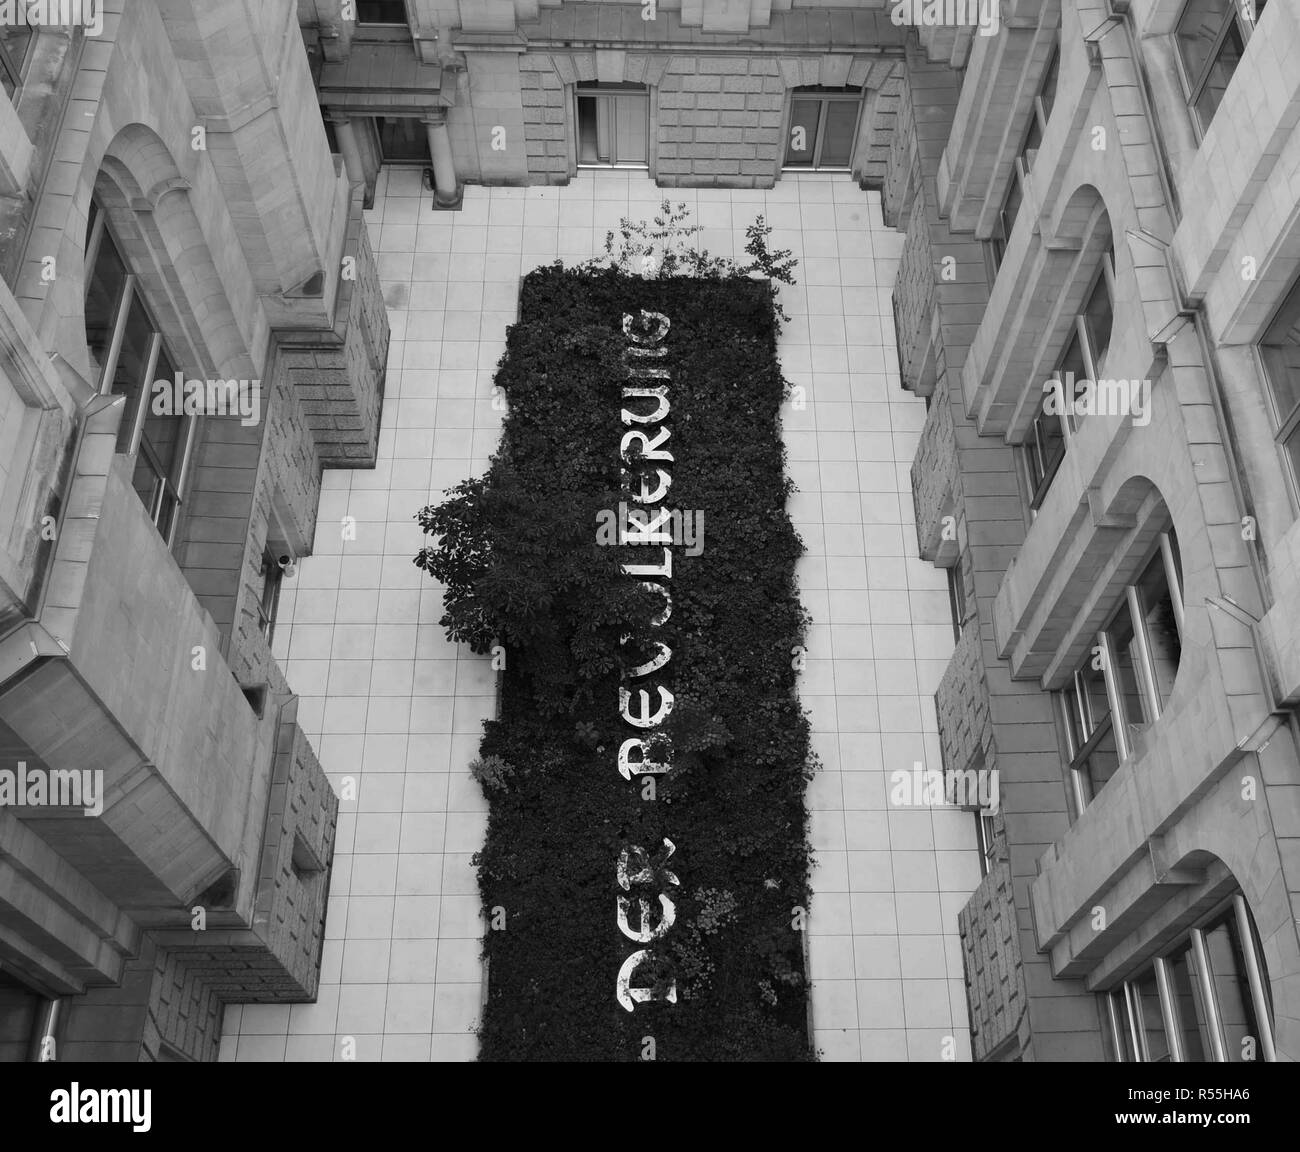 Regarder sur Hans Haacke, Der Bevölkerung art project à l'air libre cour intérieure de l'édifice du parlement du Reichstag à Berlin, Allemagne Banque D'Images